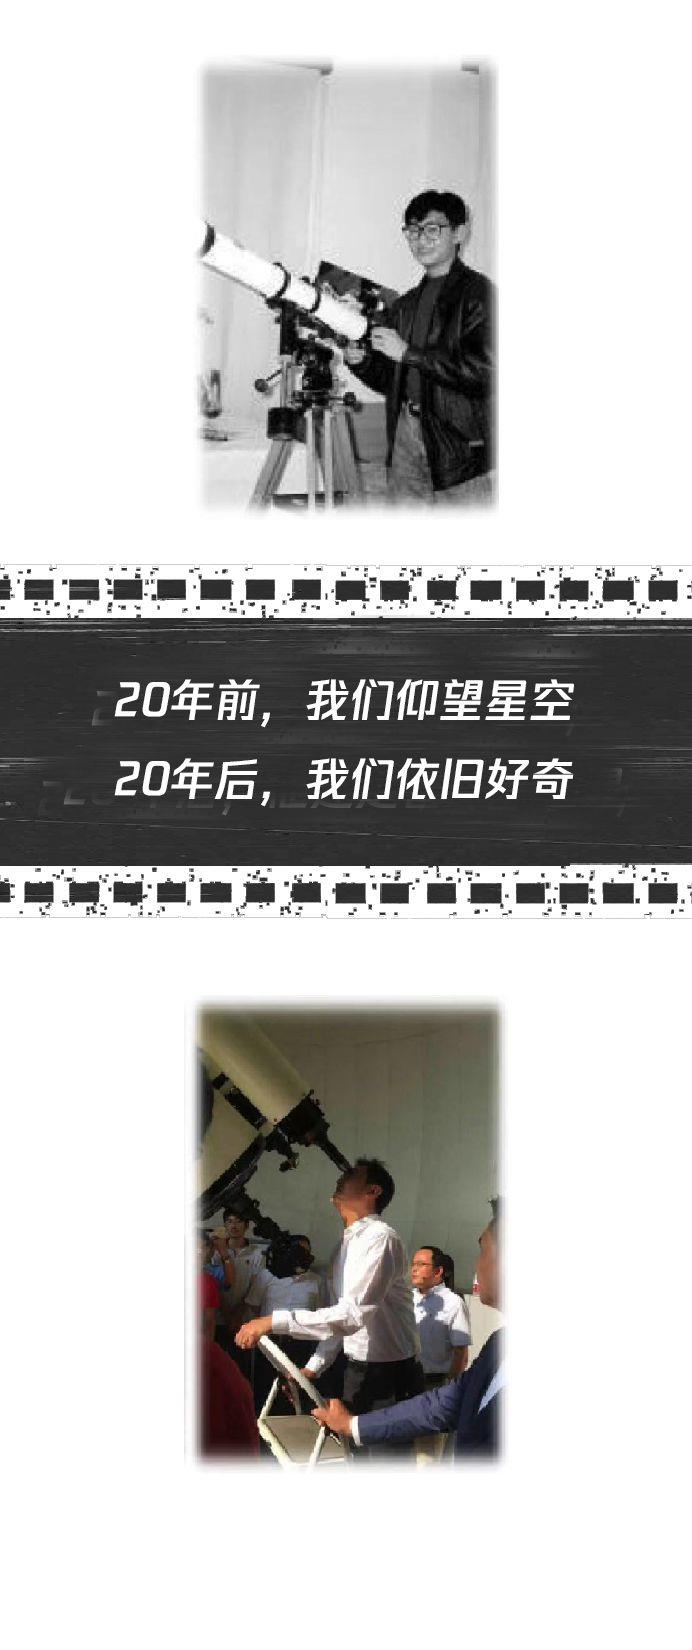 双11腾讯将迎来20岁生日 马化腾20年前的老照片曝光